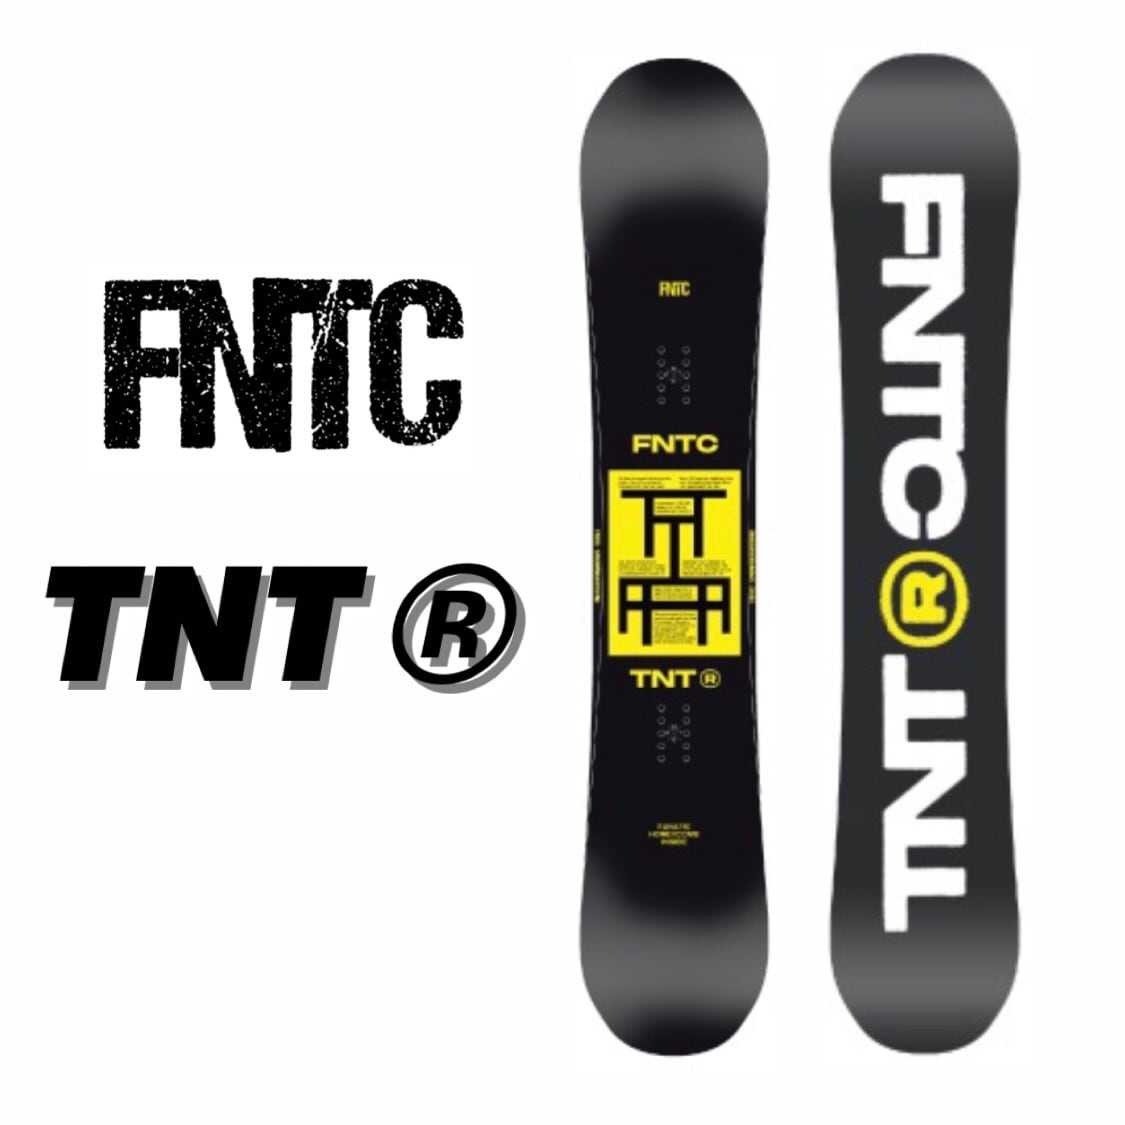 22-23 FNTC TNT R スノーボード エフエヌティーシー カービング